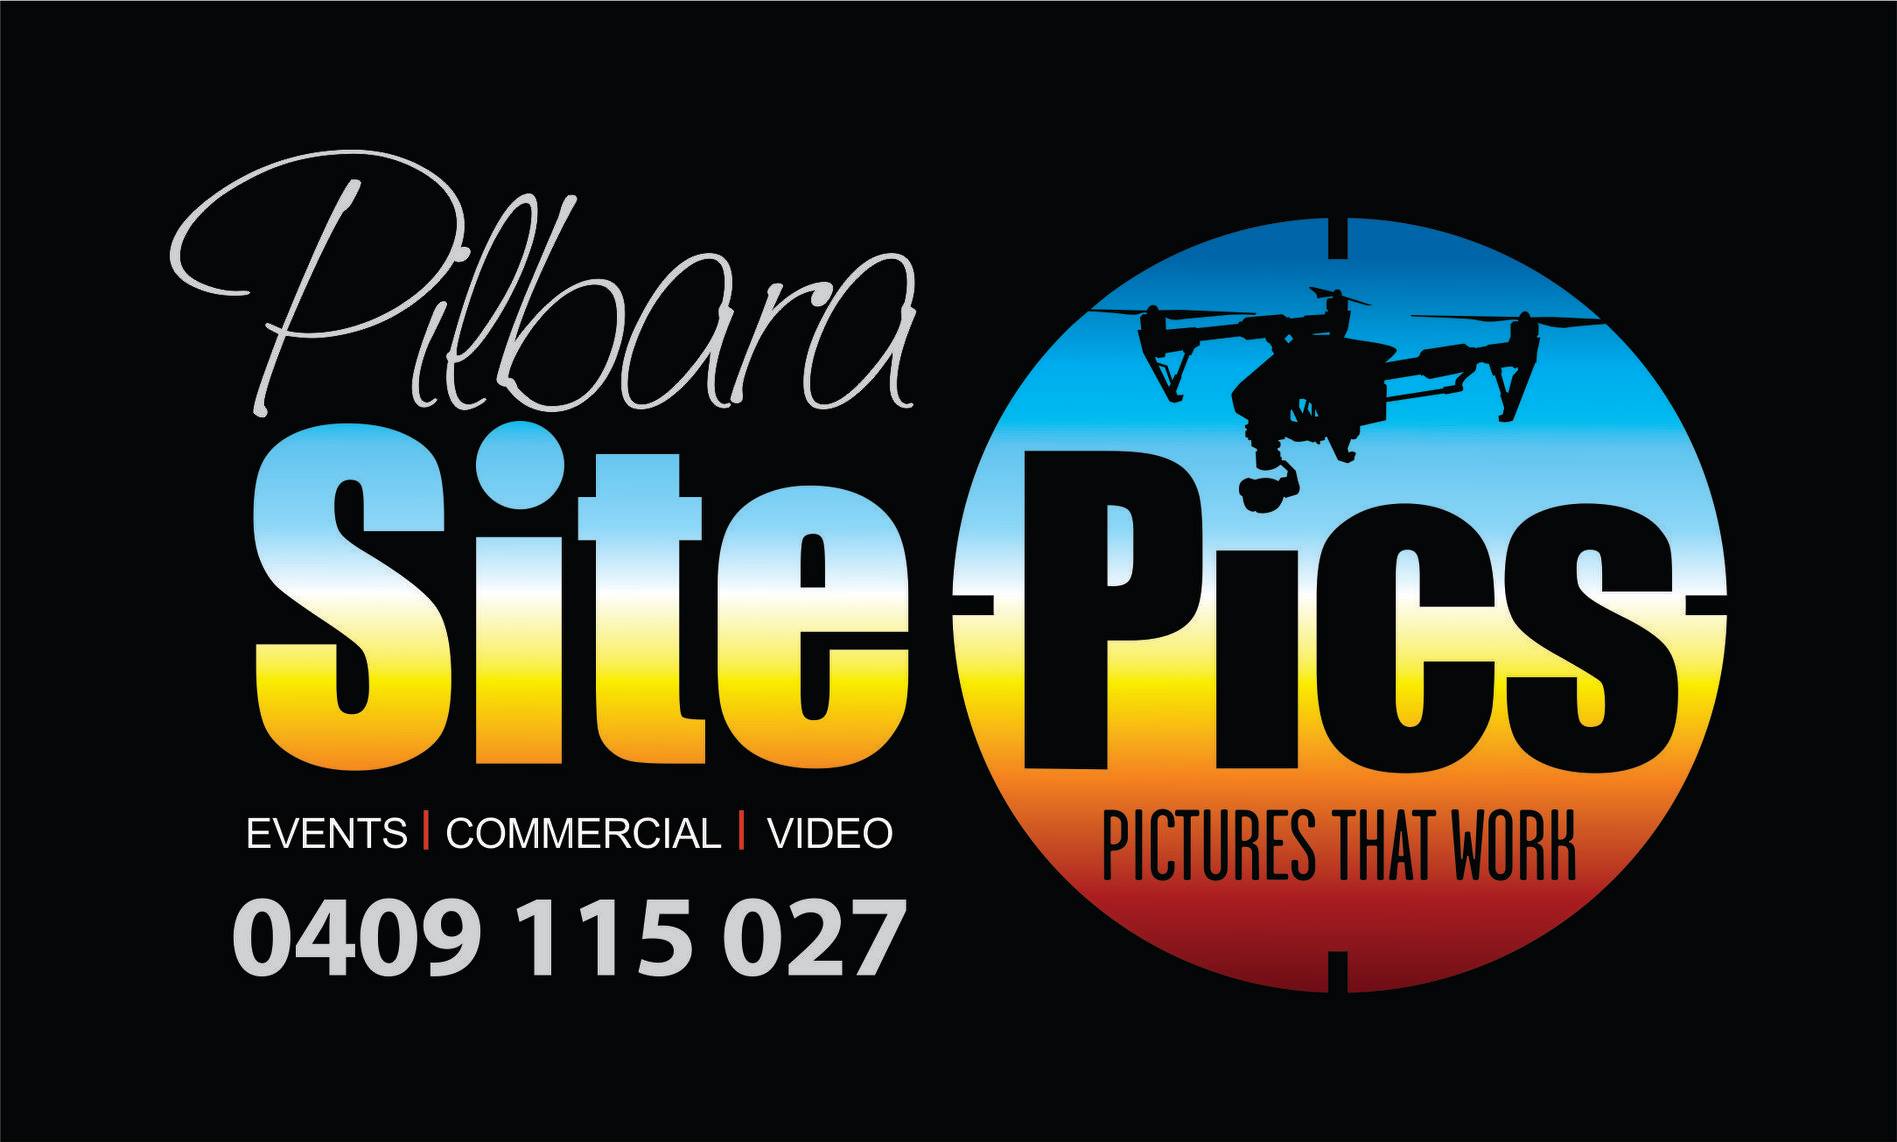 Pilbara Site Pics